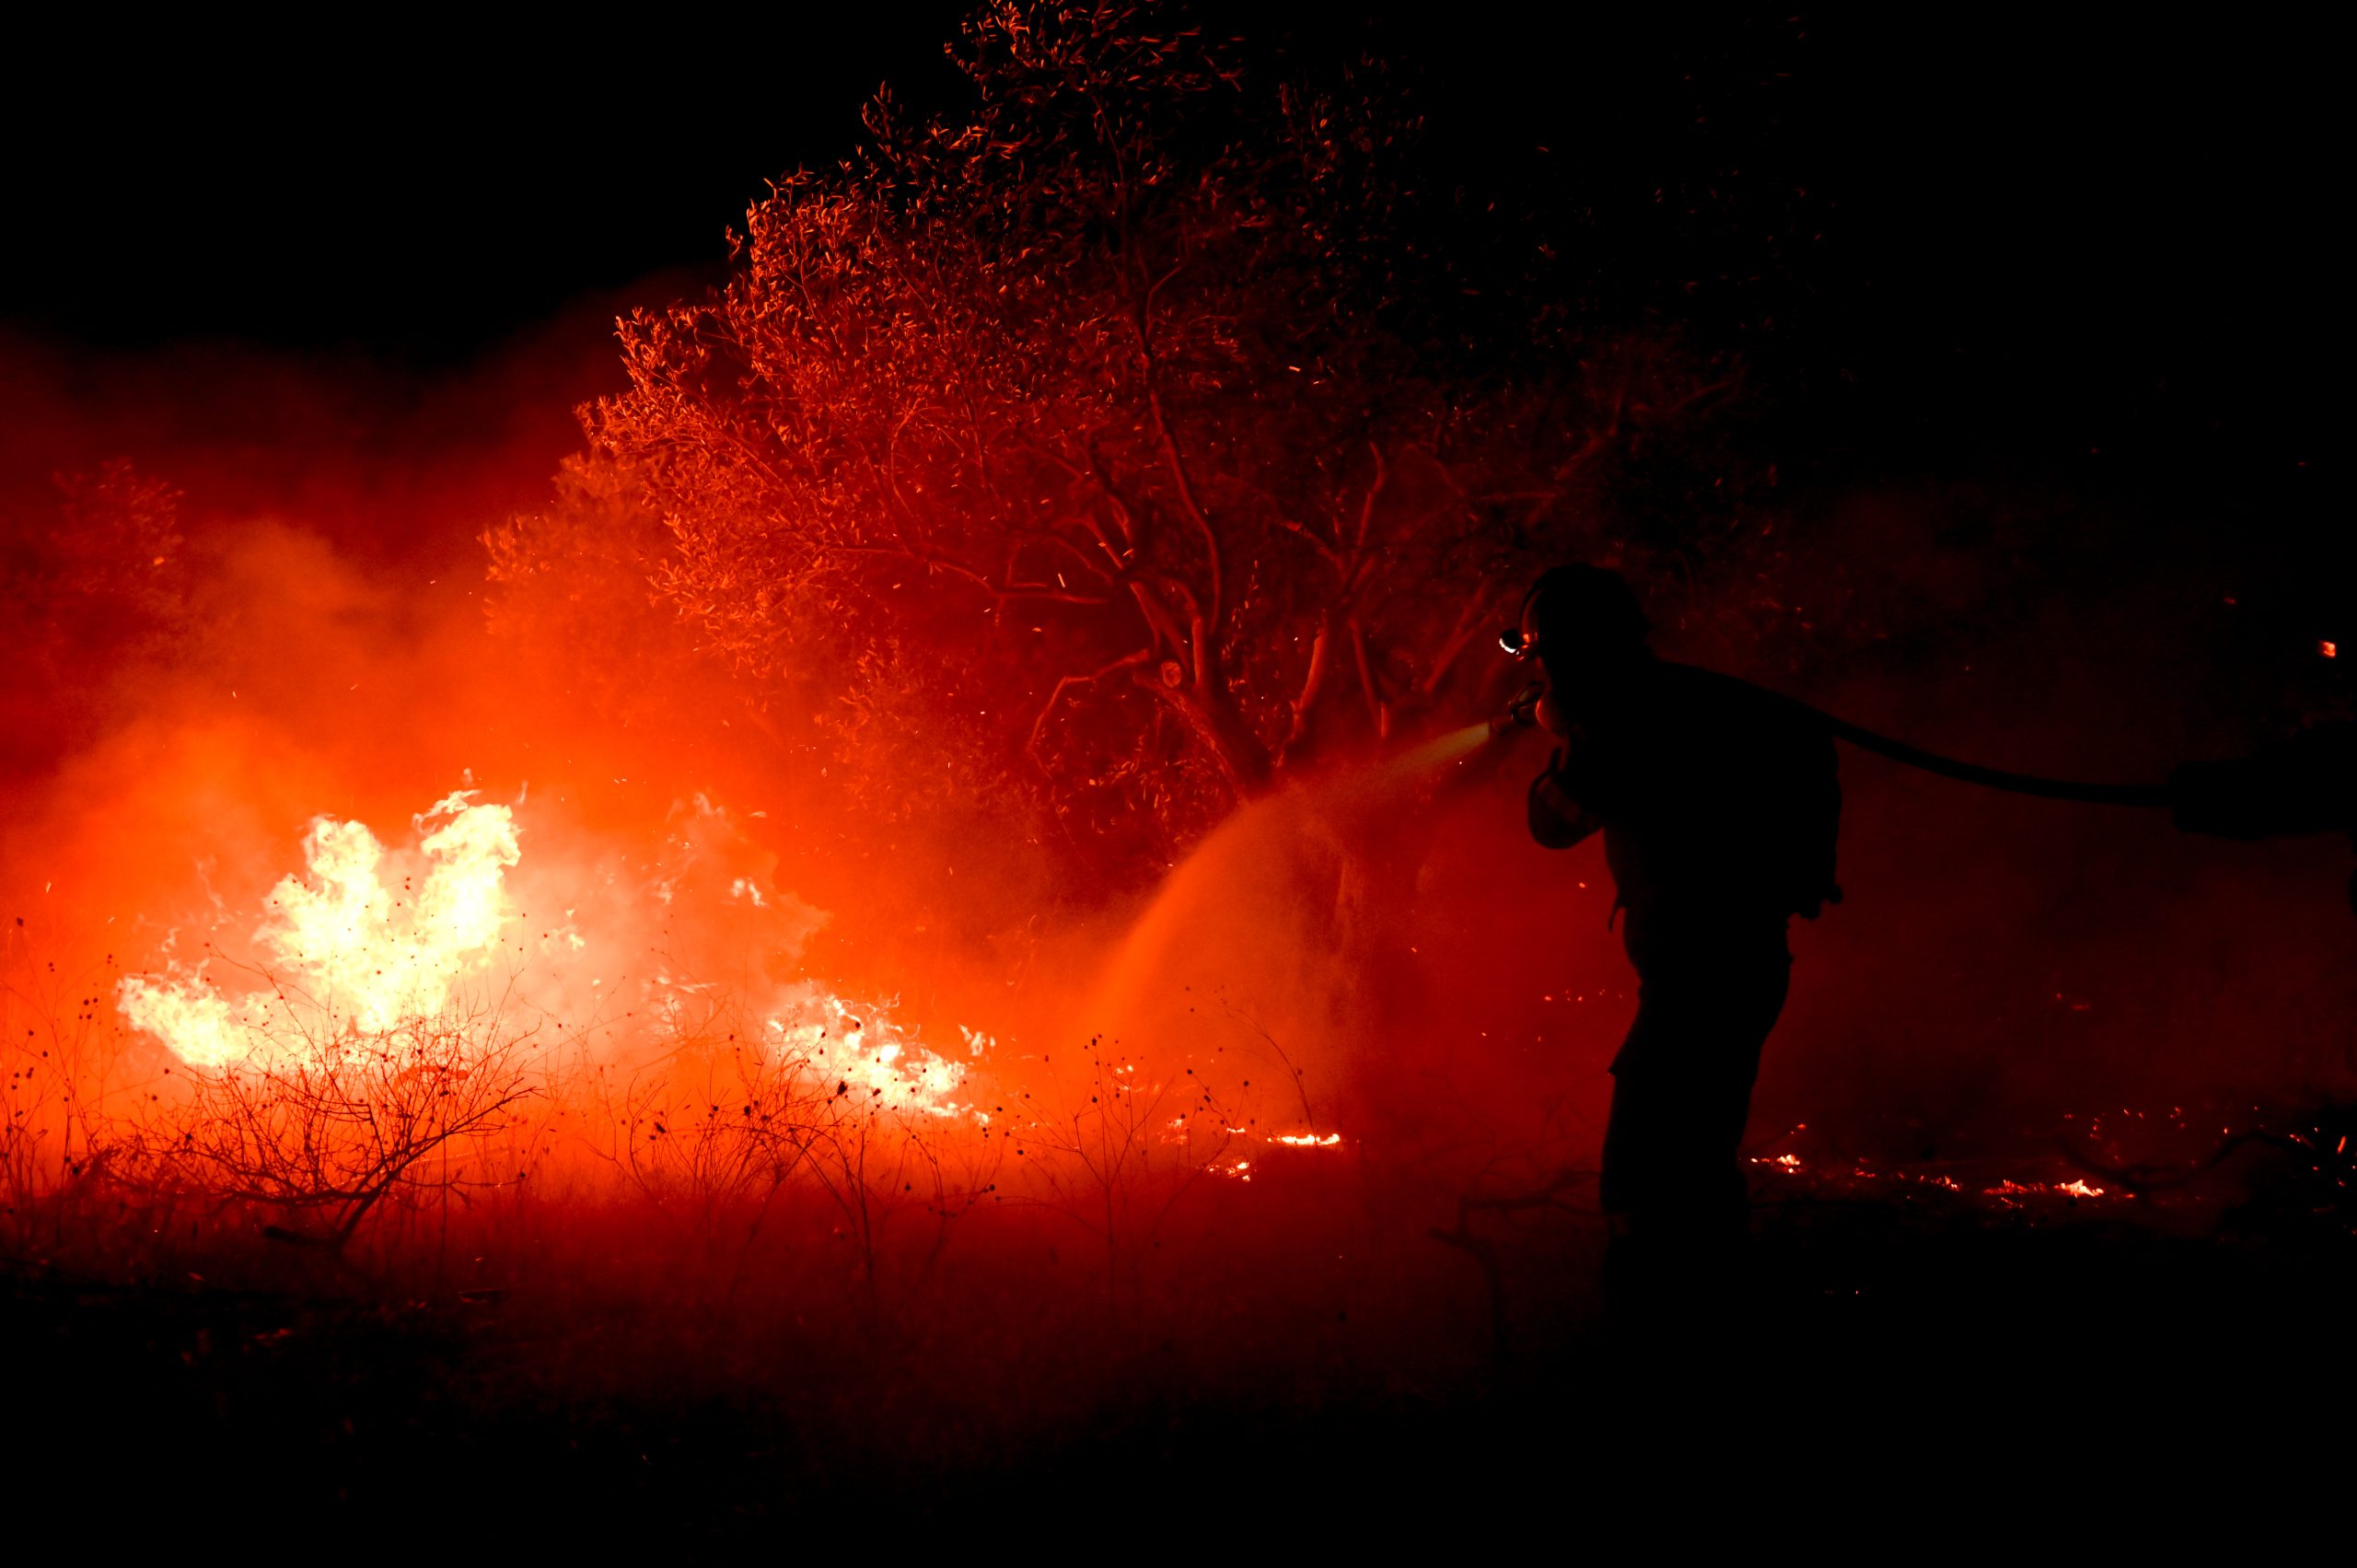 Έσβησε η πυρκαγιά στη Δαδιά – Σε επιφυλακή η πυροσβεστική για αναζωπυρώσεις